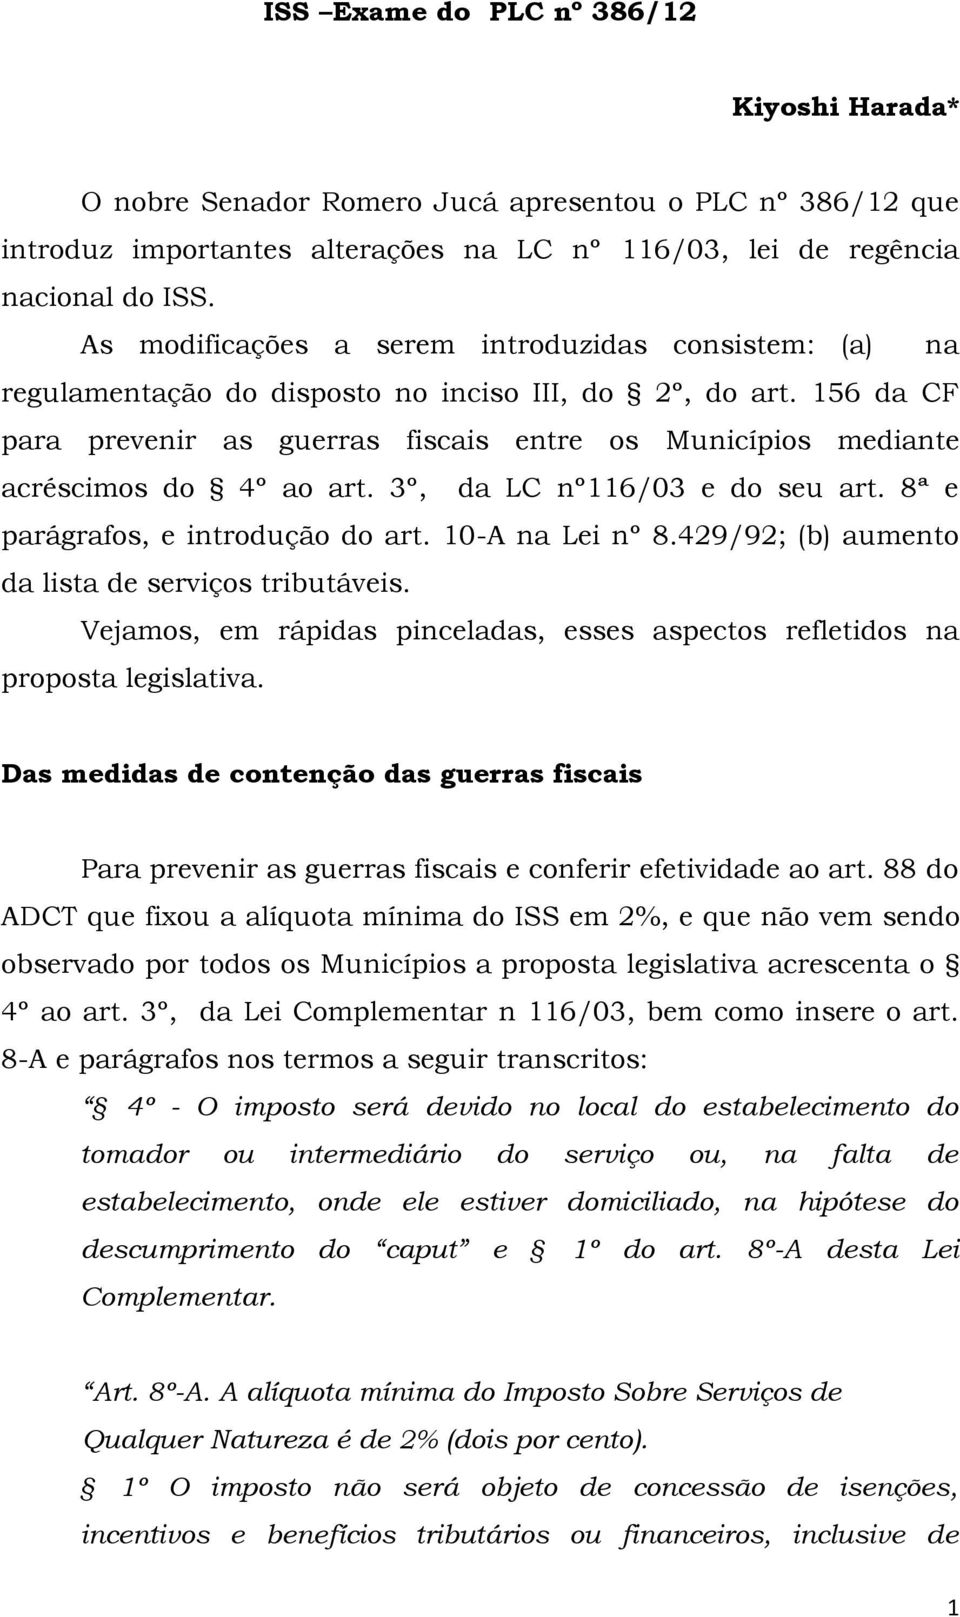 156 da CF para prevenir as guerras fiscais entre os Municípios mediante acréscimos do 4º ao art. 3º, da LC nº116/03 e do seu art. 8ª e parágrafos, e introdução do art. 10-A na Lei nº 8.